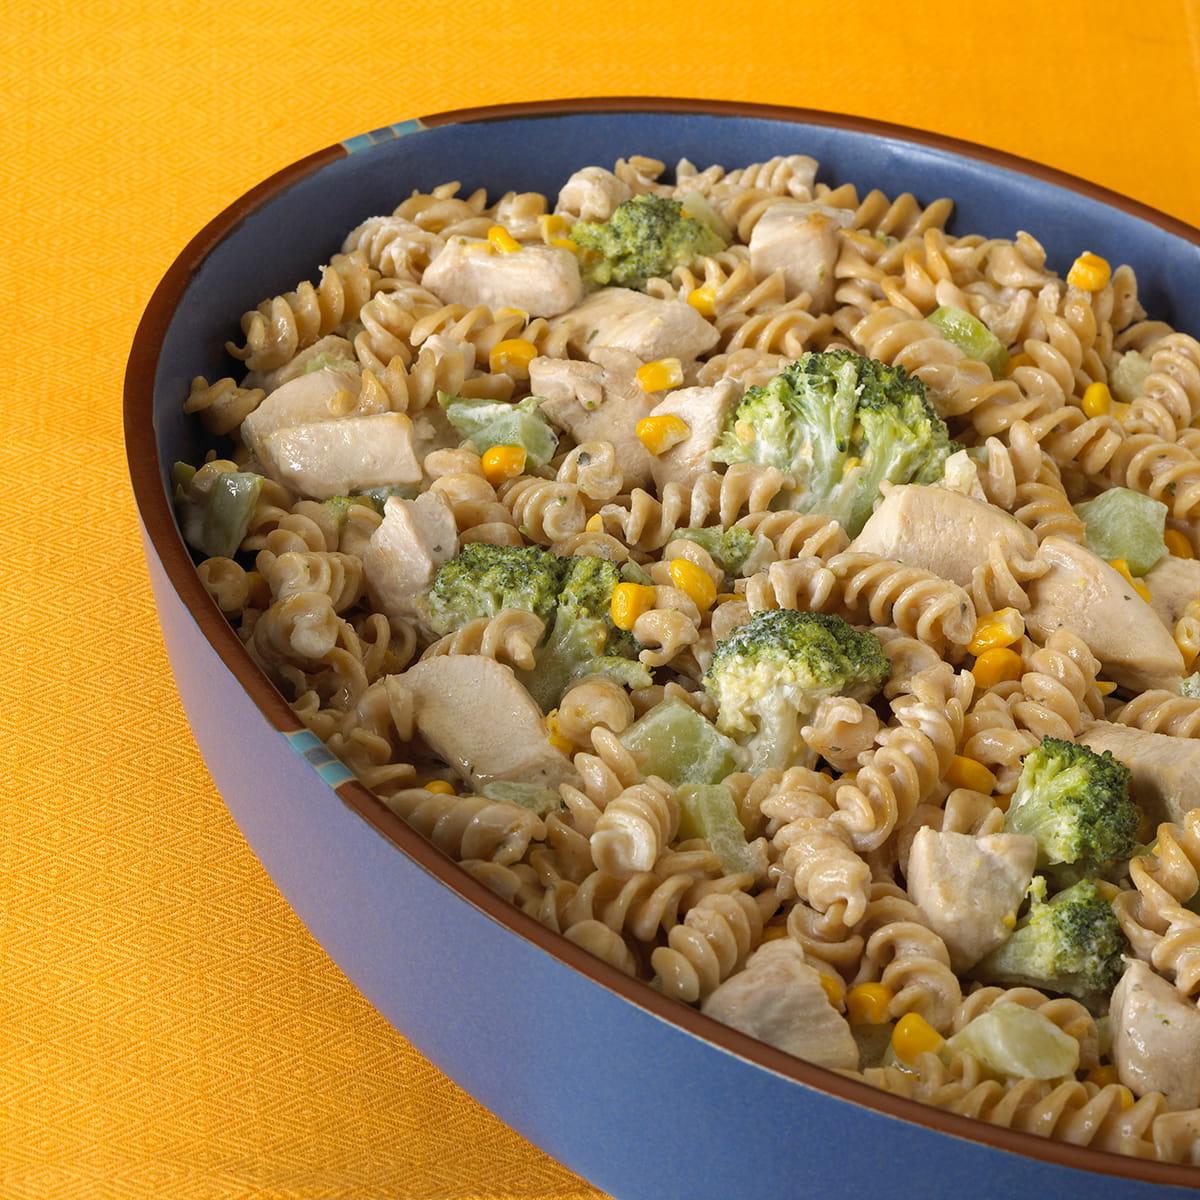 Creamy Chicken Broccoli Casserole with Whole Wheat Pasta